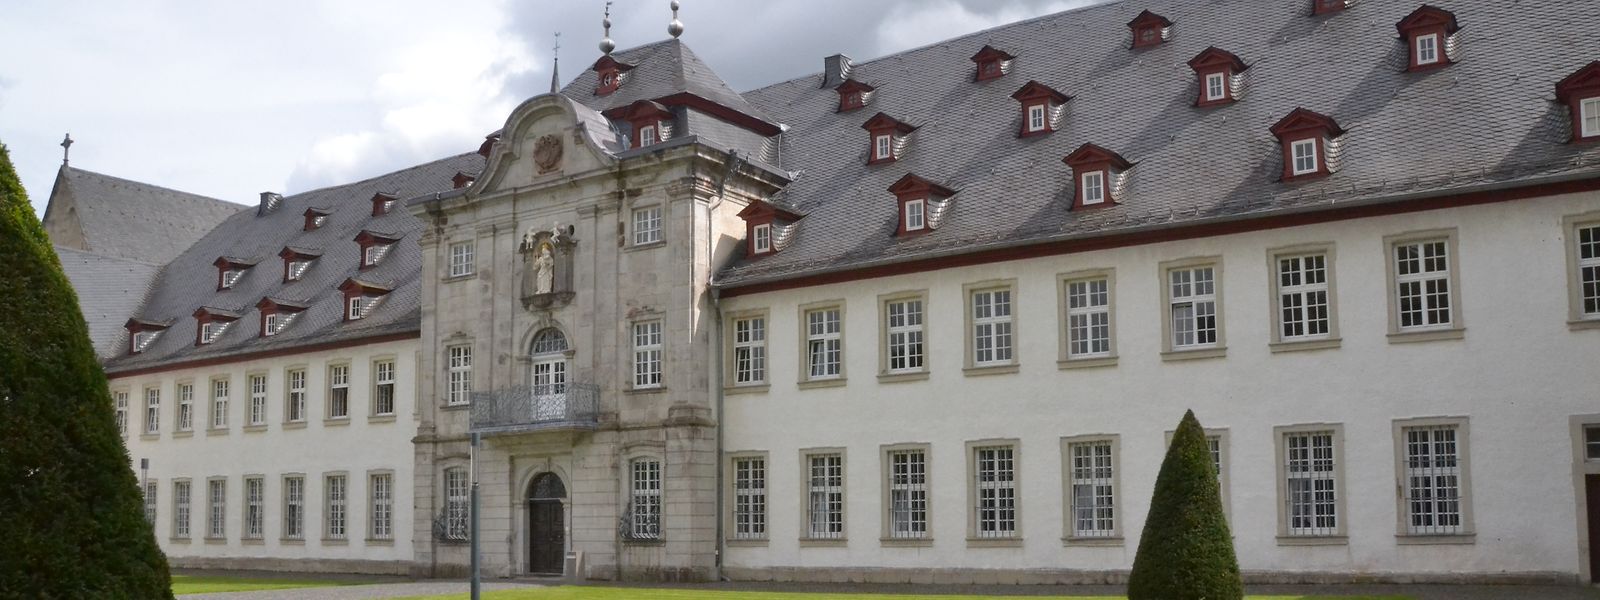 Das Kloster Marienstatt stammt aus dem 18. Jahrhundert. 